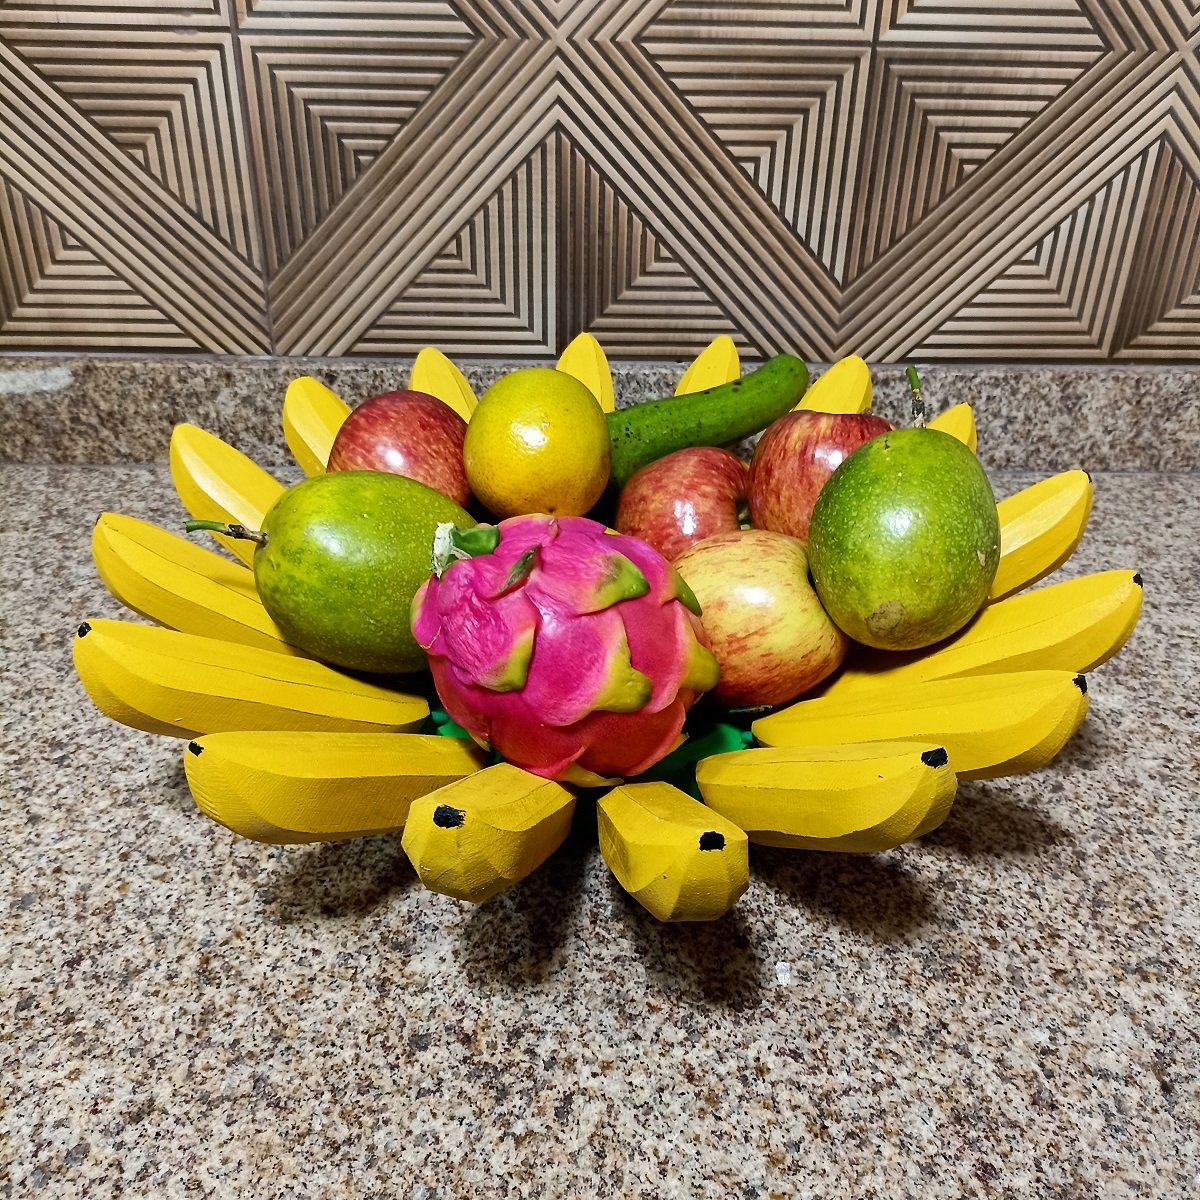 Fruteira Fruta de Mesa em Formato de Banana Artesanato Rústico Feito de Madeira super resistente ide